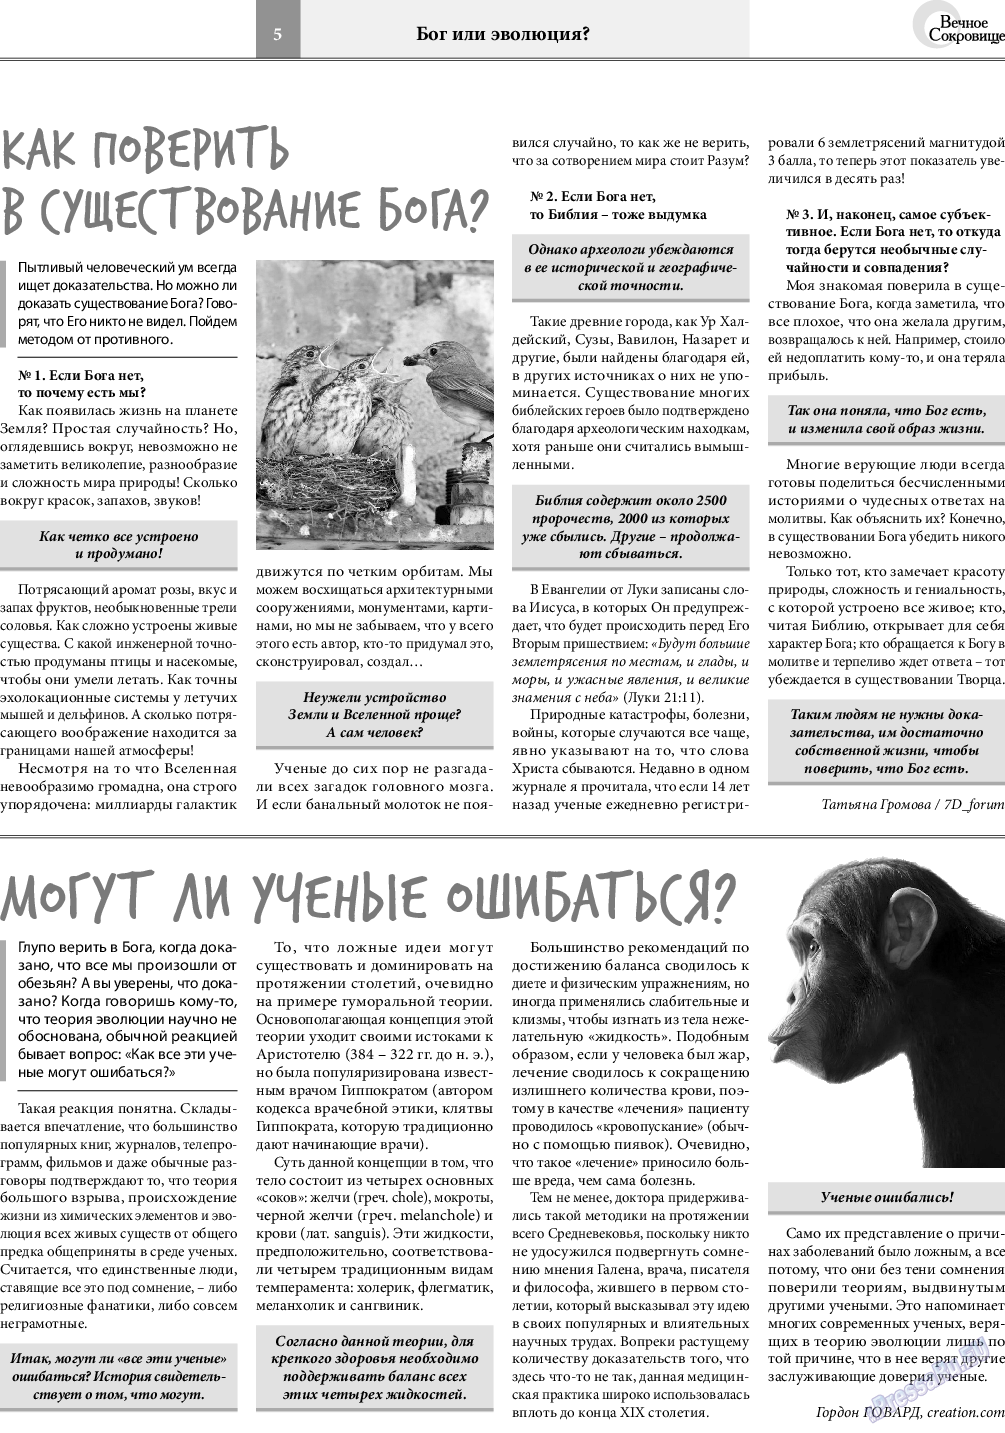 Вечное сокровище, газета. 2019 №1 стр.5